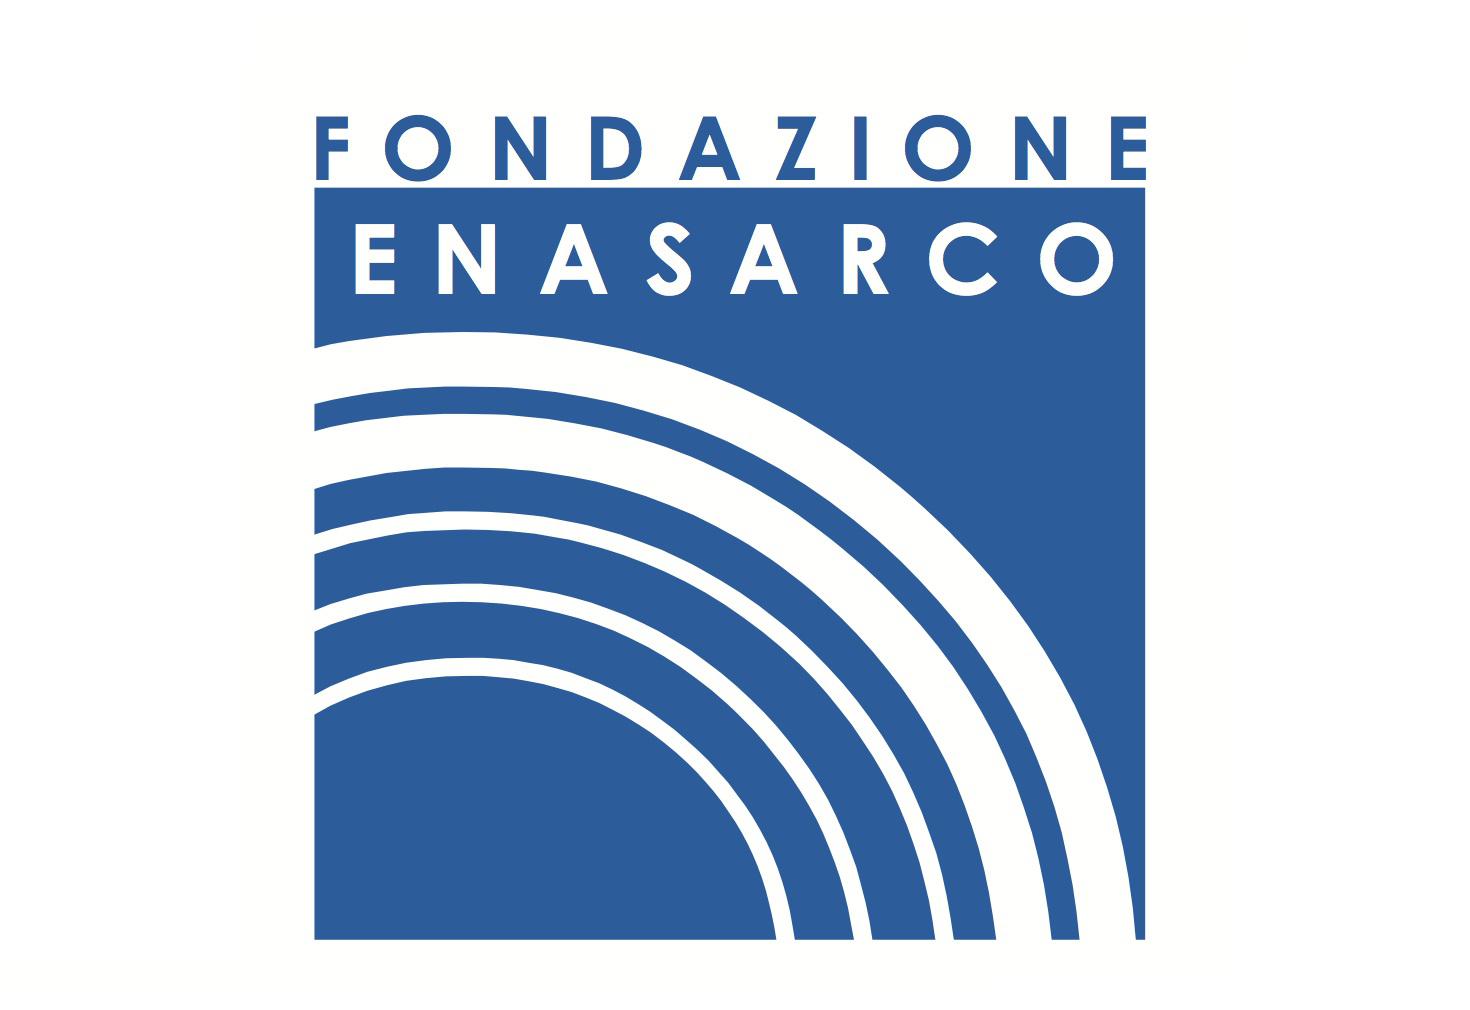 enasarco logo